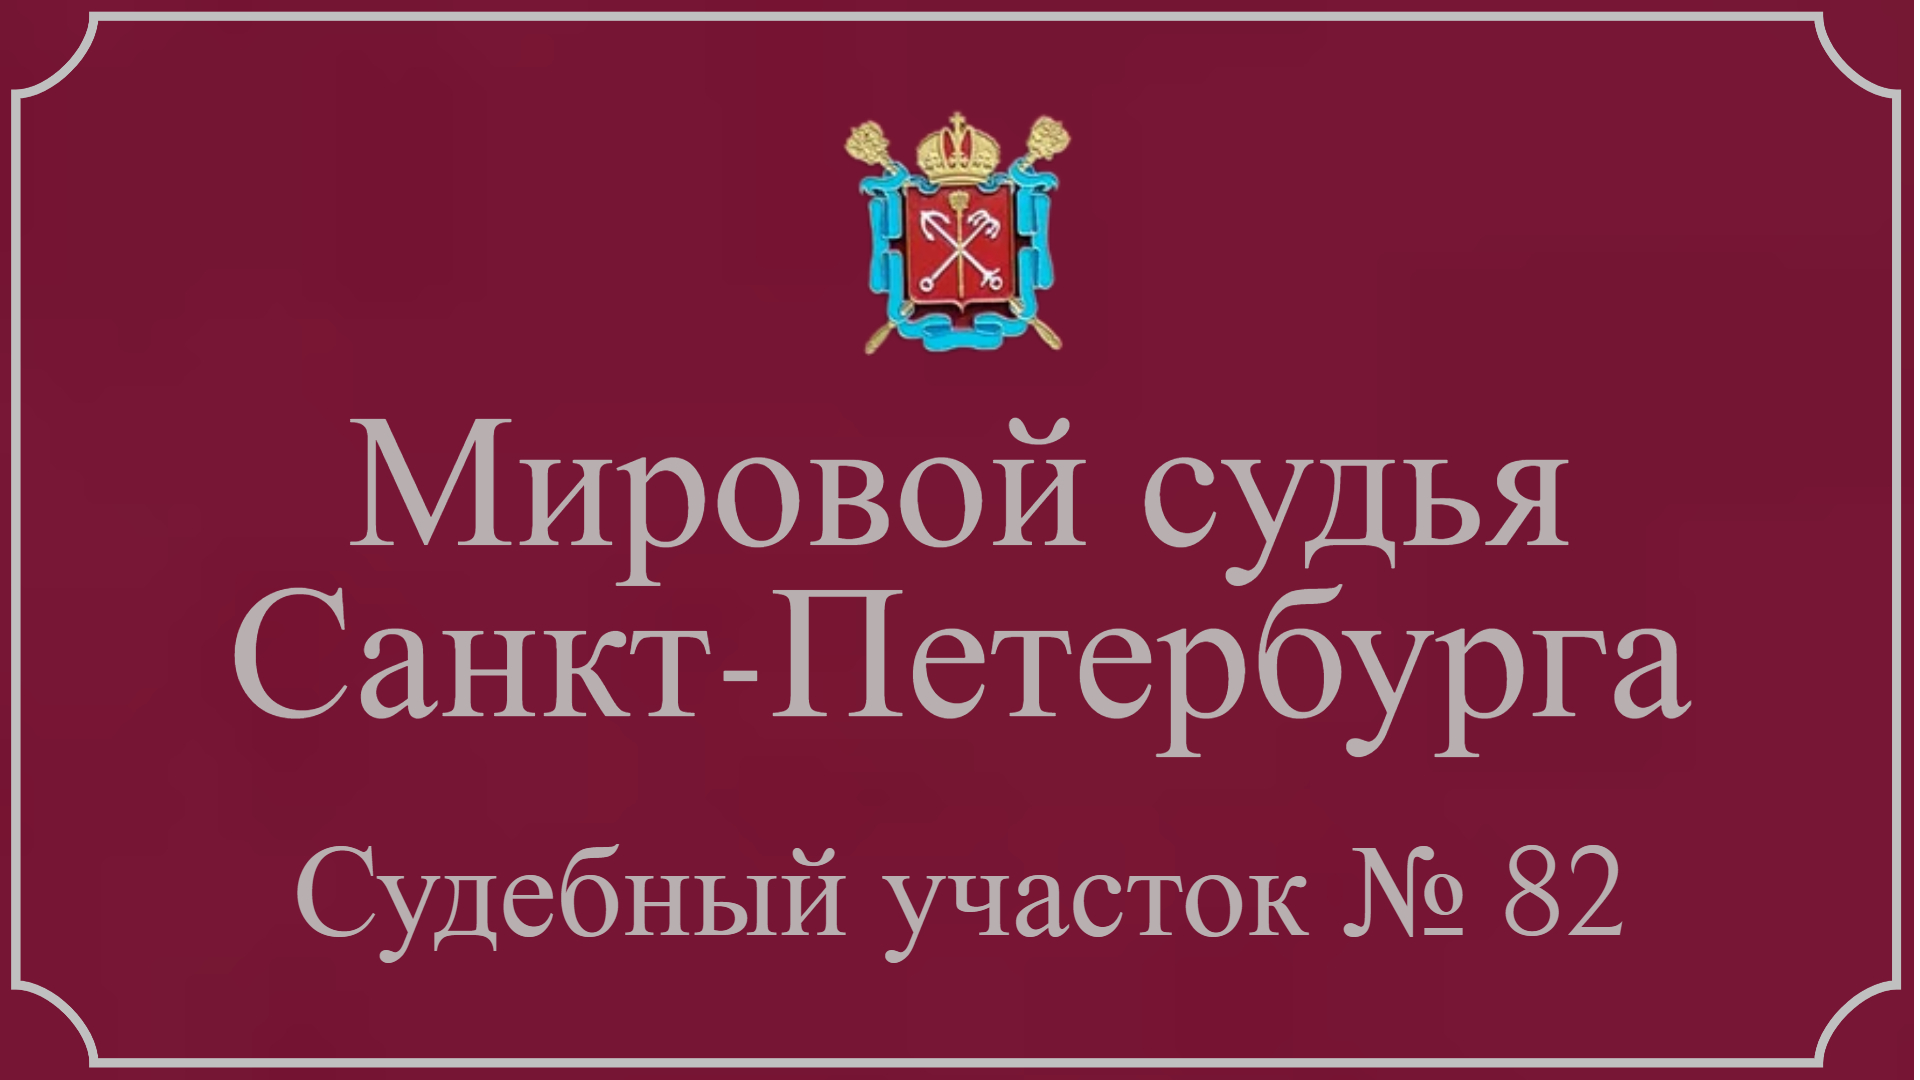 Информация по 82 судебному участку в Санкт-Петербурге.